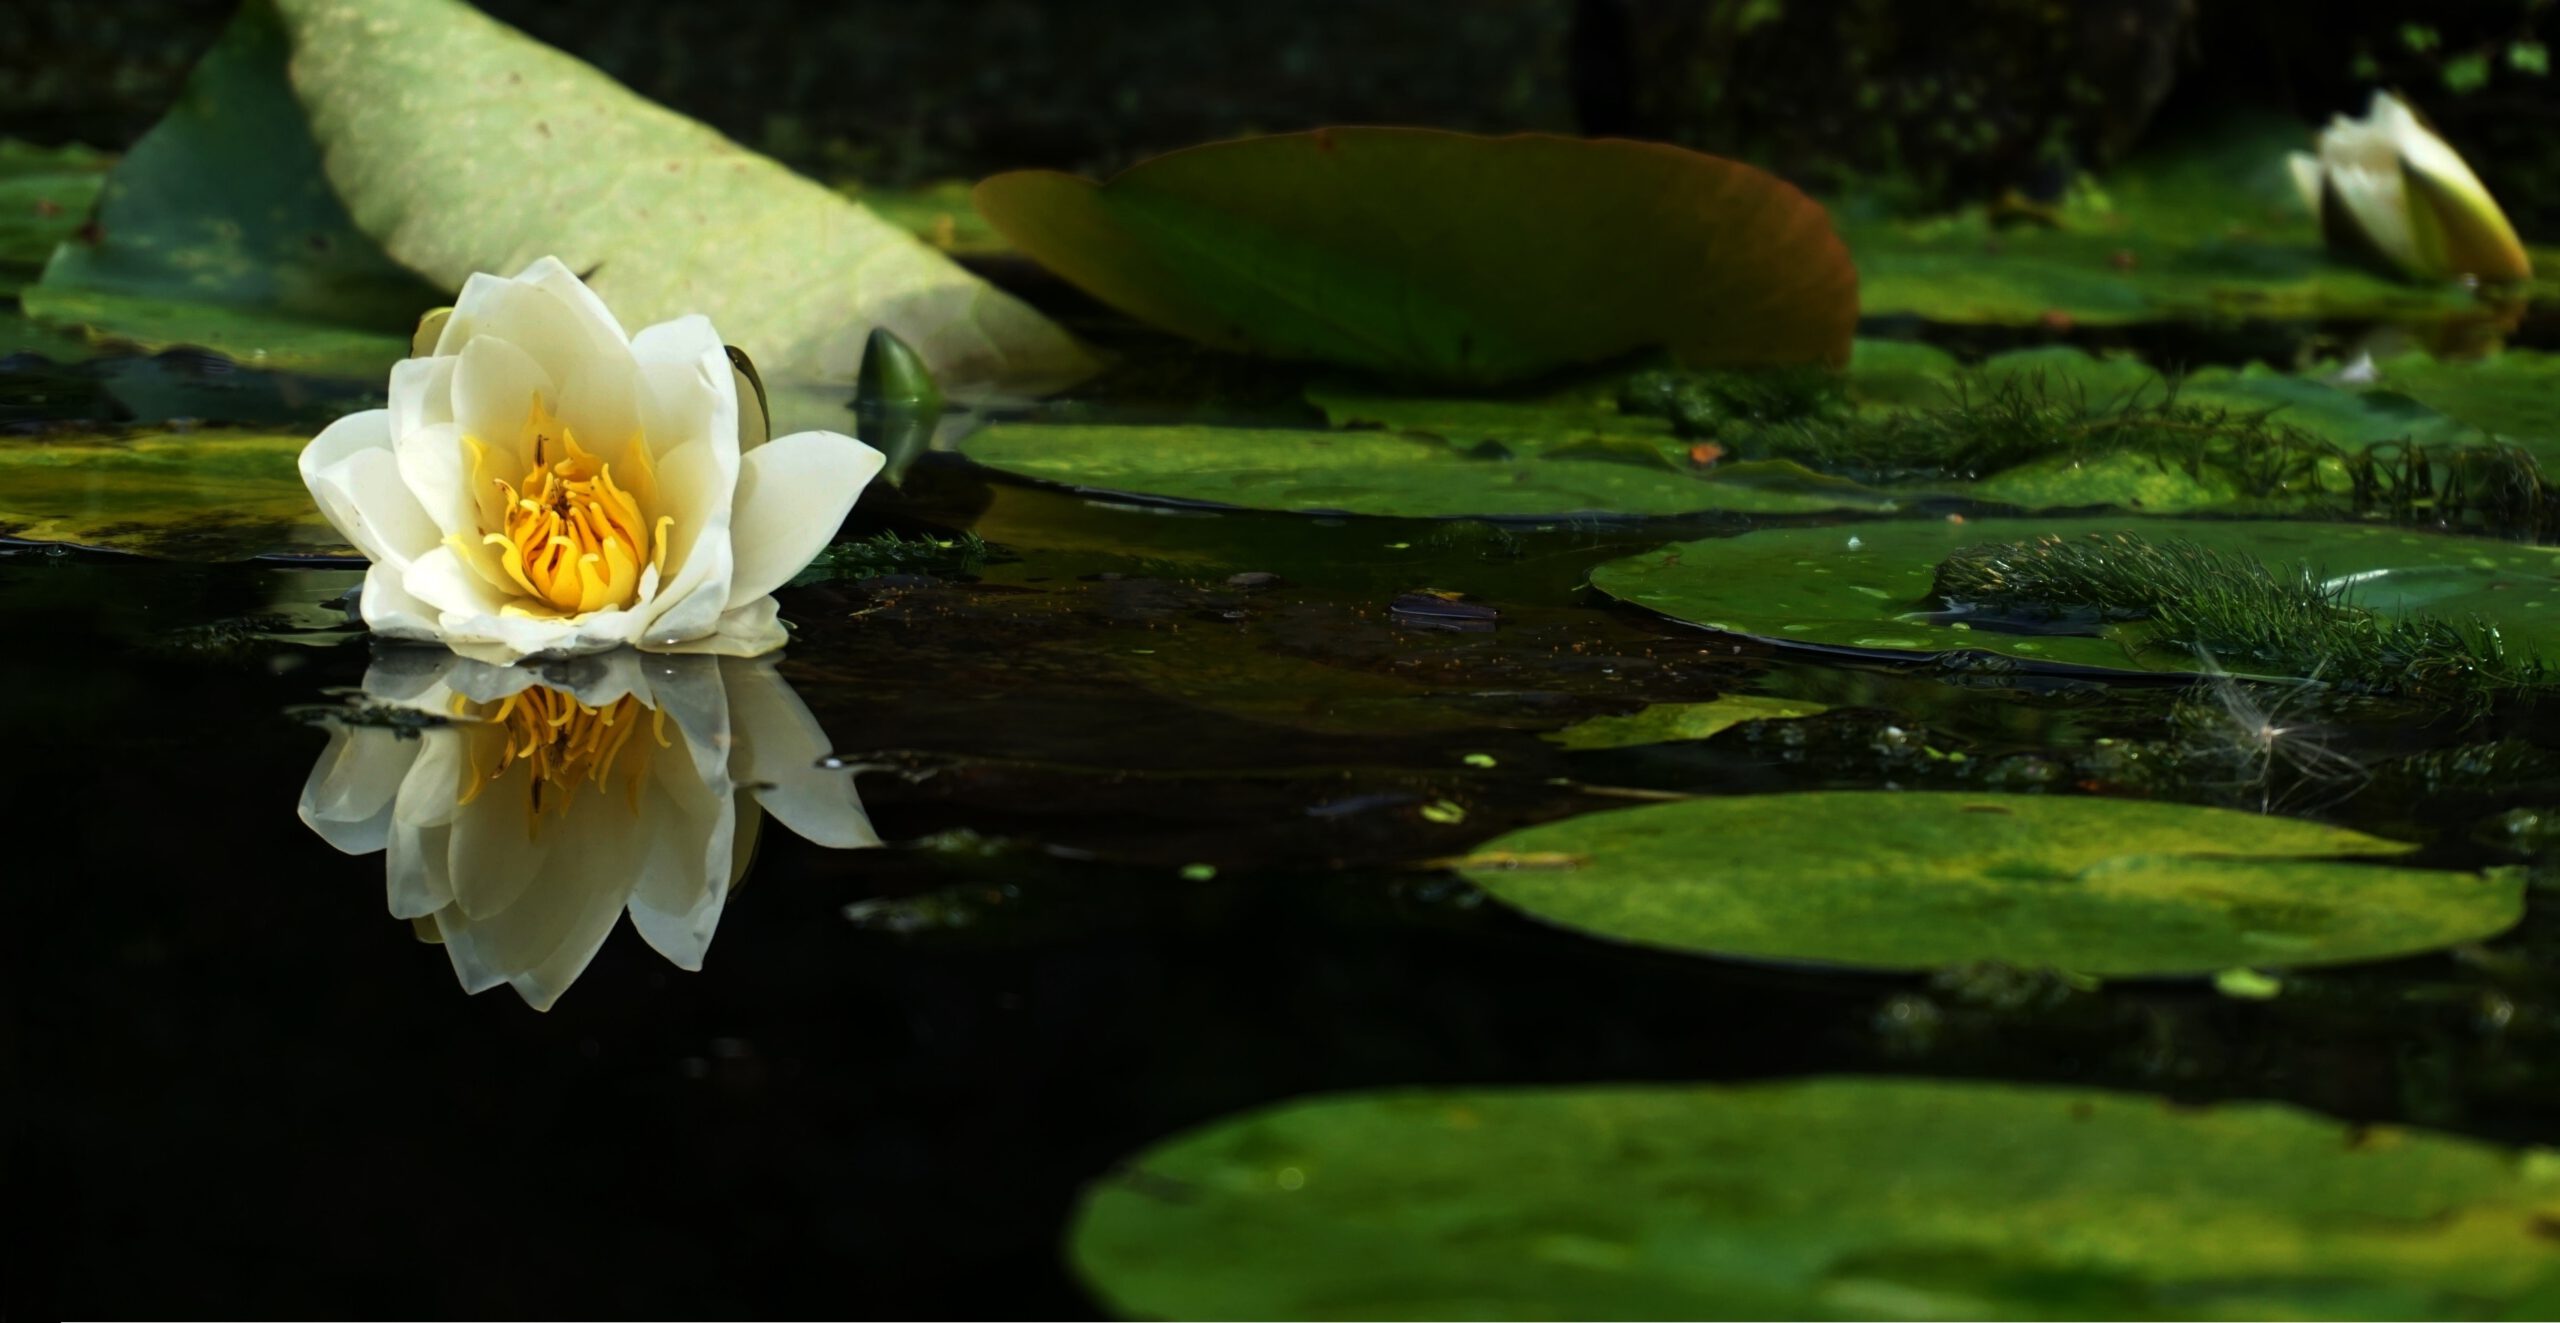 Zielone liście i biały kwiat na powierzchni oczka wodnego